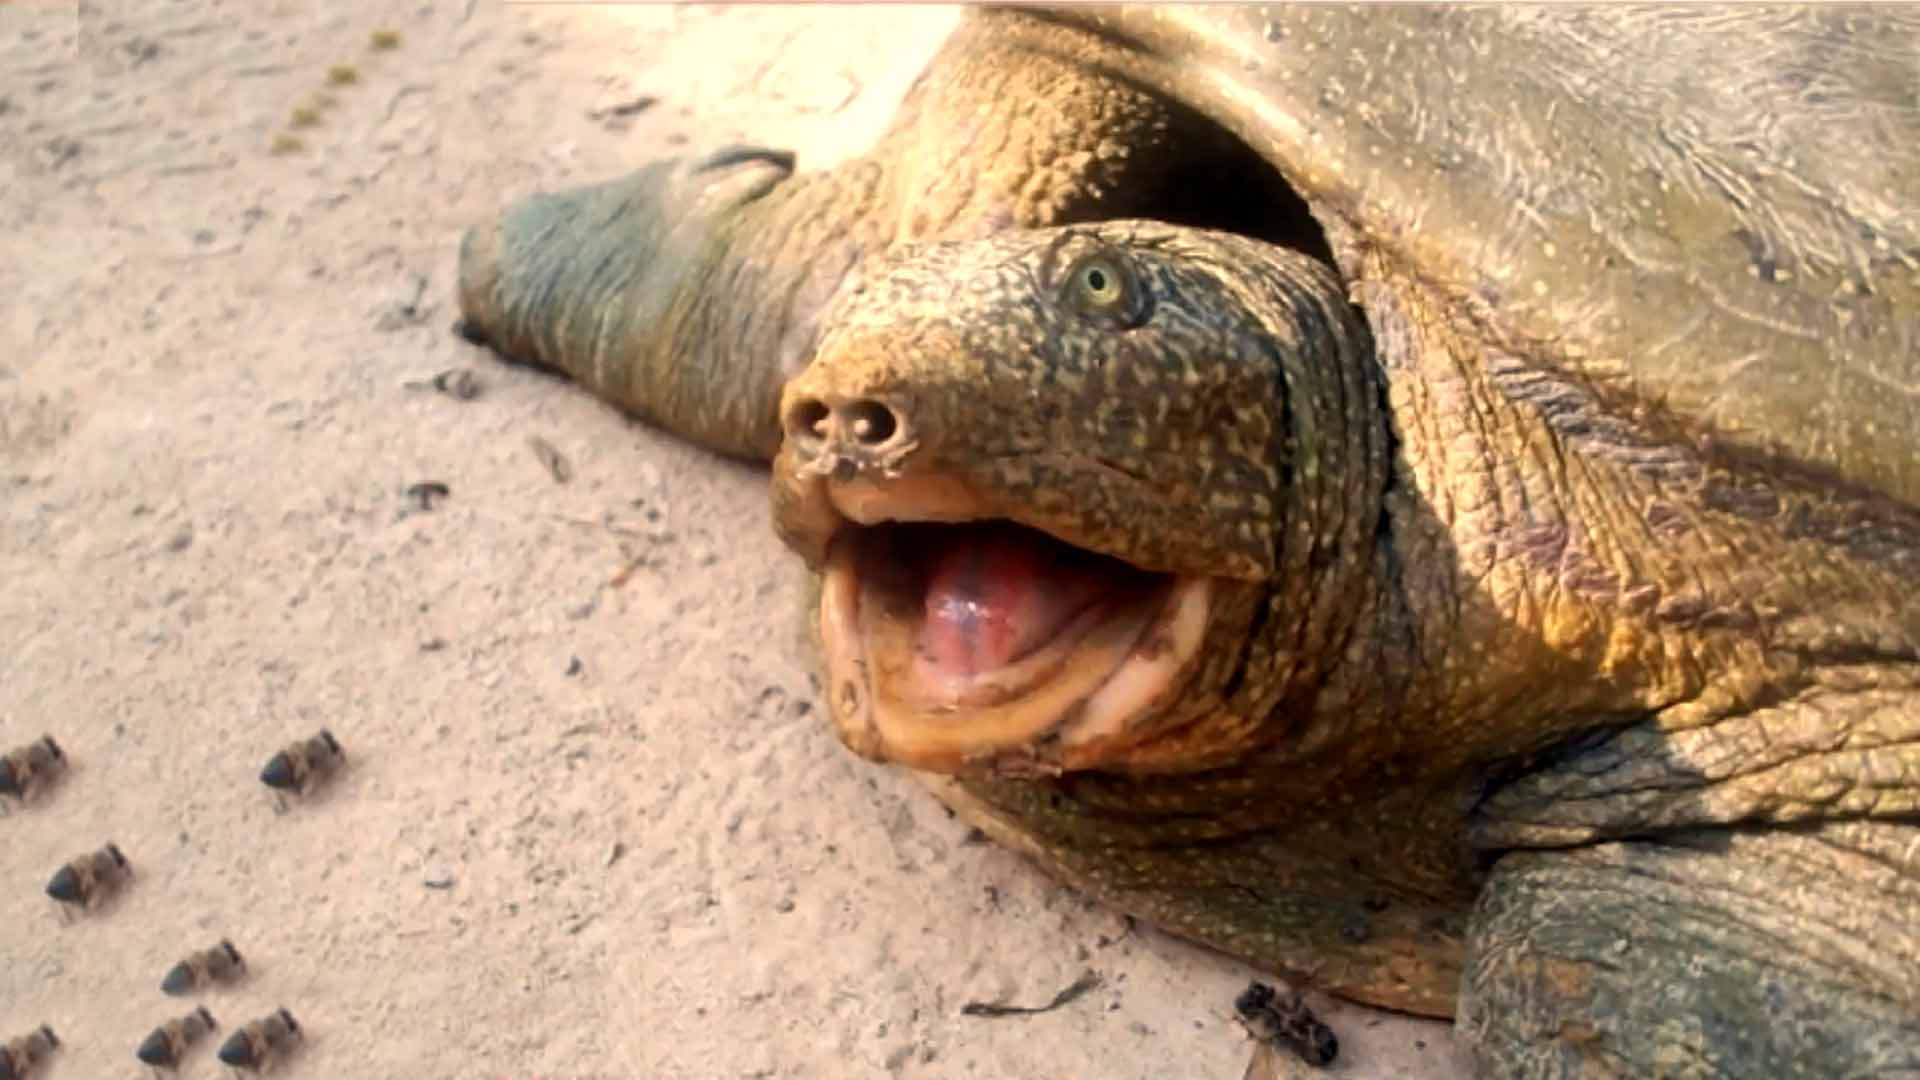 Diyarbakır’da Nesli Tükenmek Üzere Olan Fırat Kaplumbağası İle Karşılaşıldı!?fit=thumb&w=418&h=152&q=80